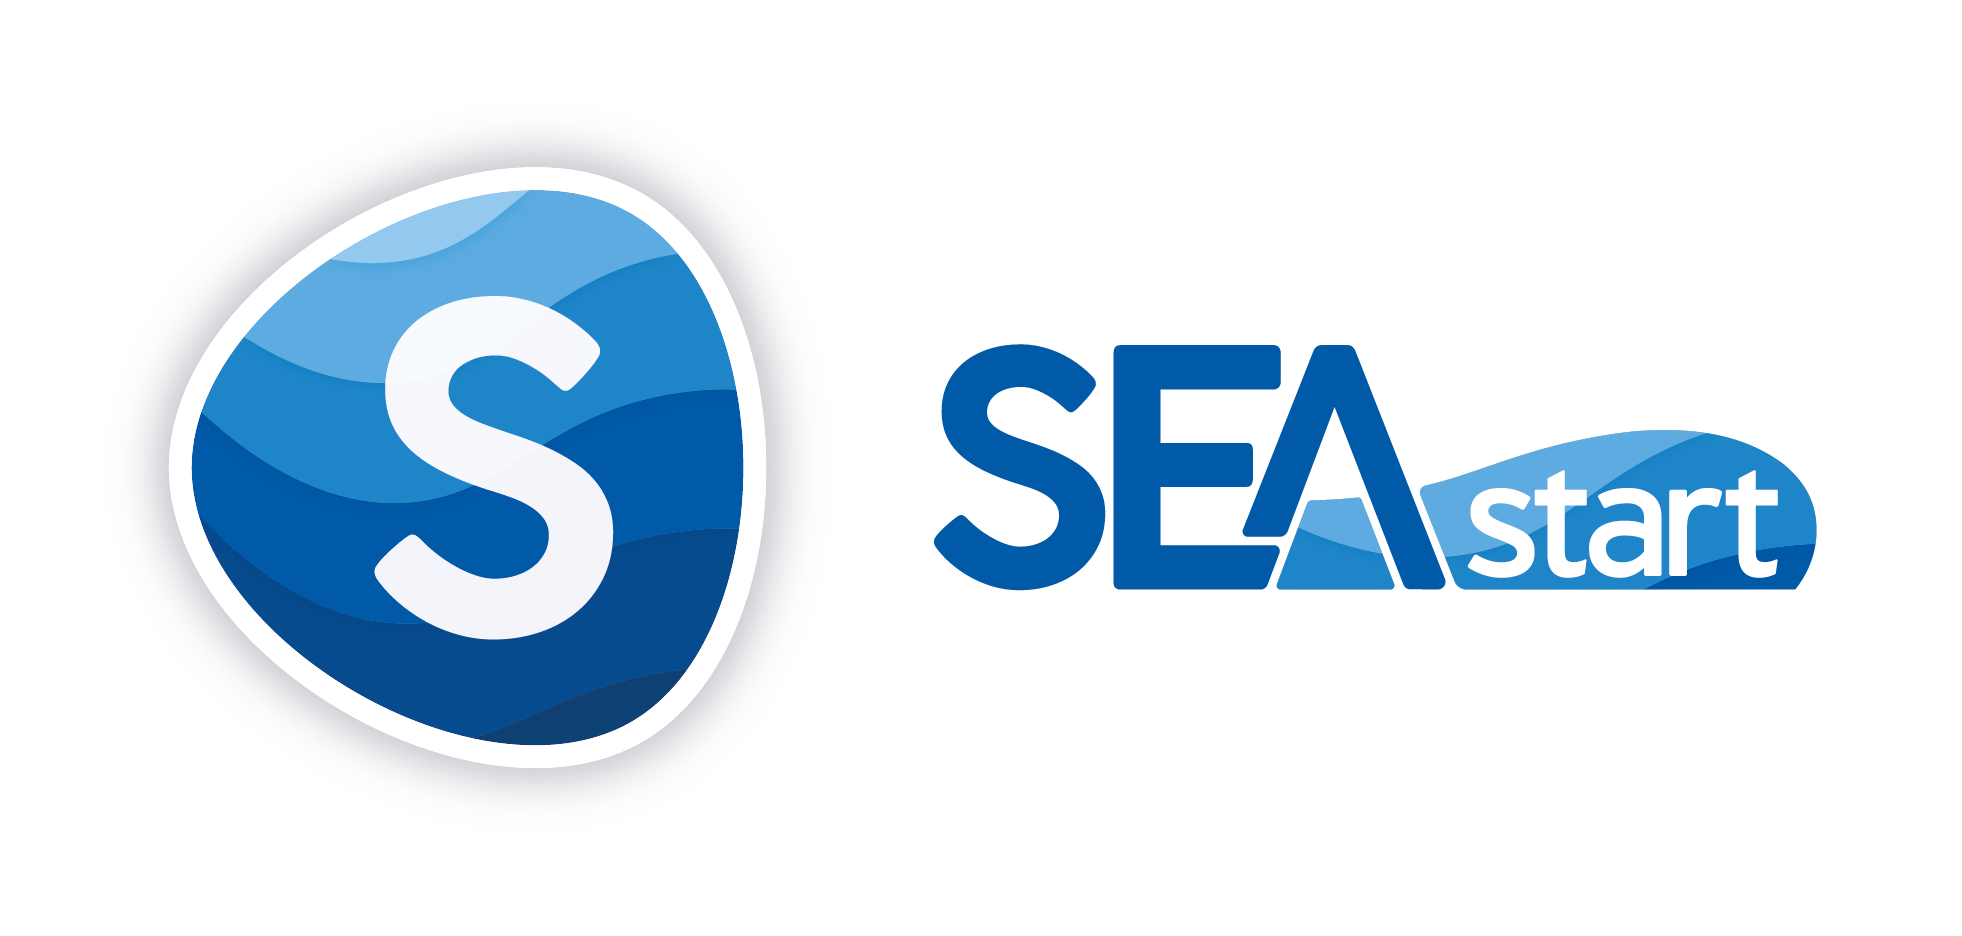 SEASTART logo full EDM 3 10 2019